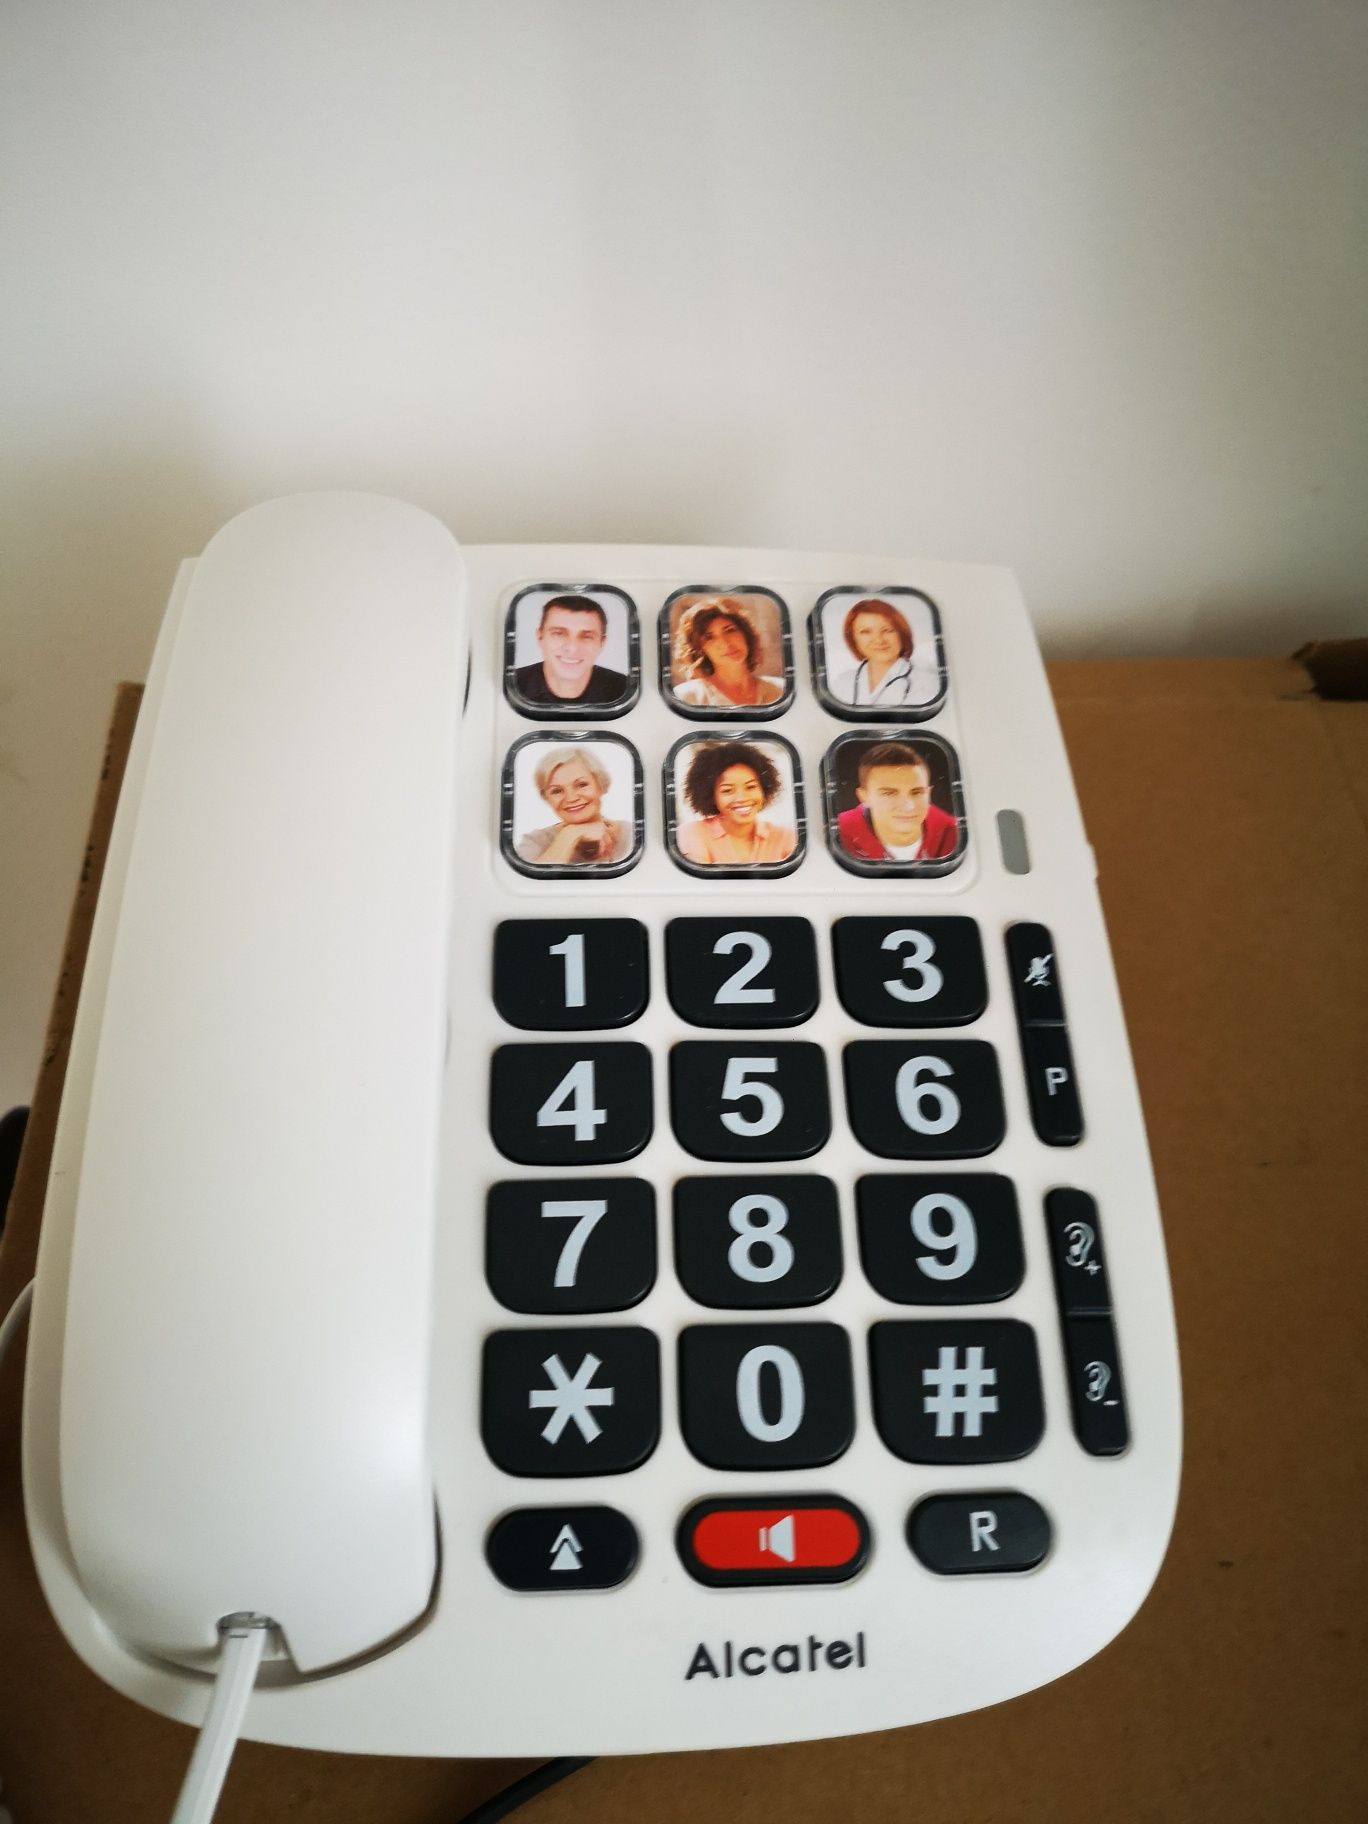 Telefon fix seniori cu taste mari, Alcatel Tmax10